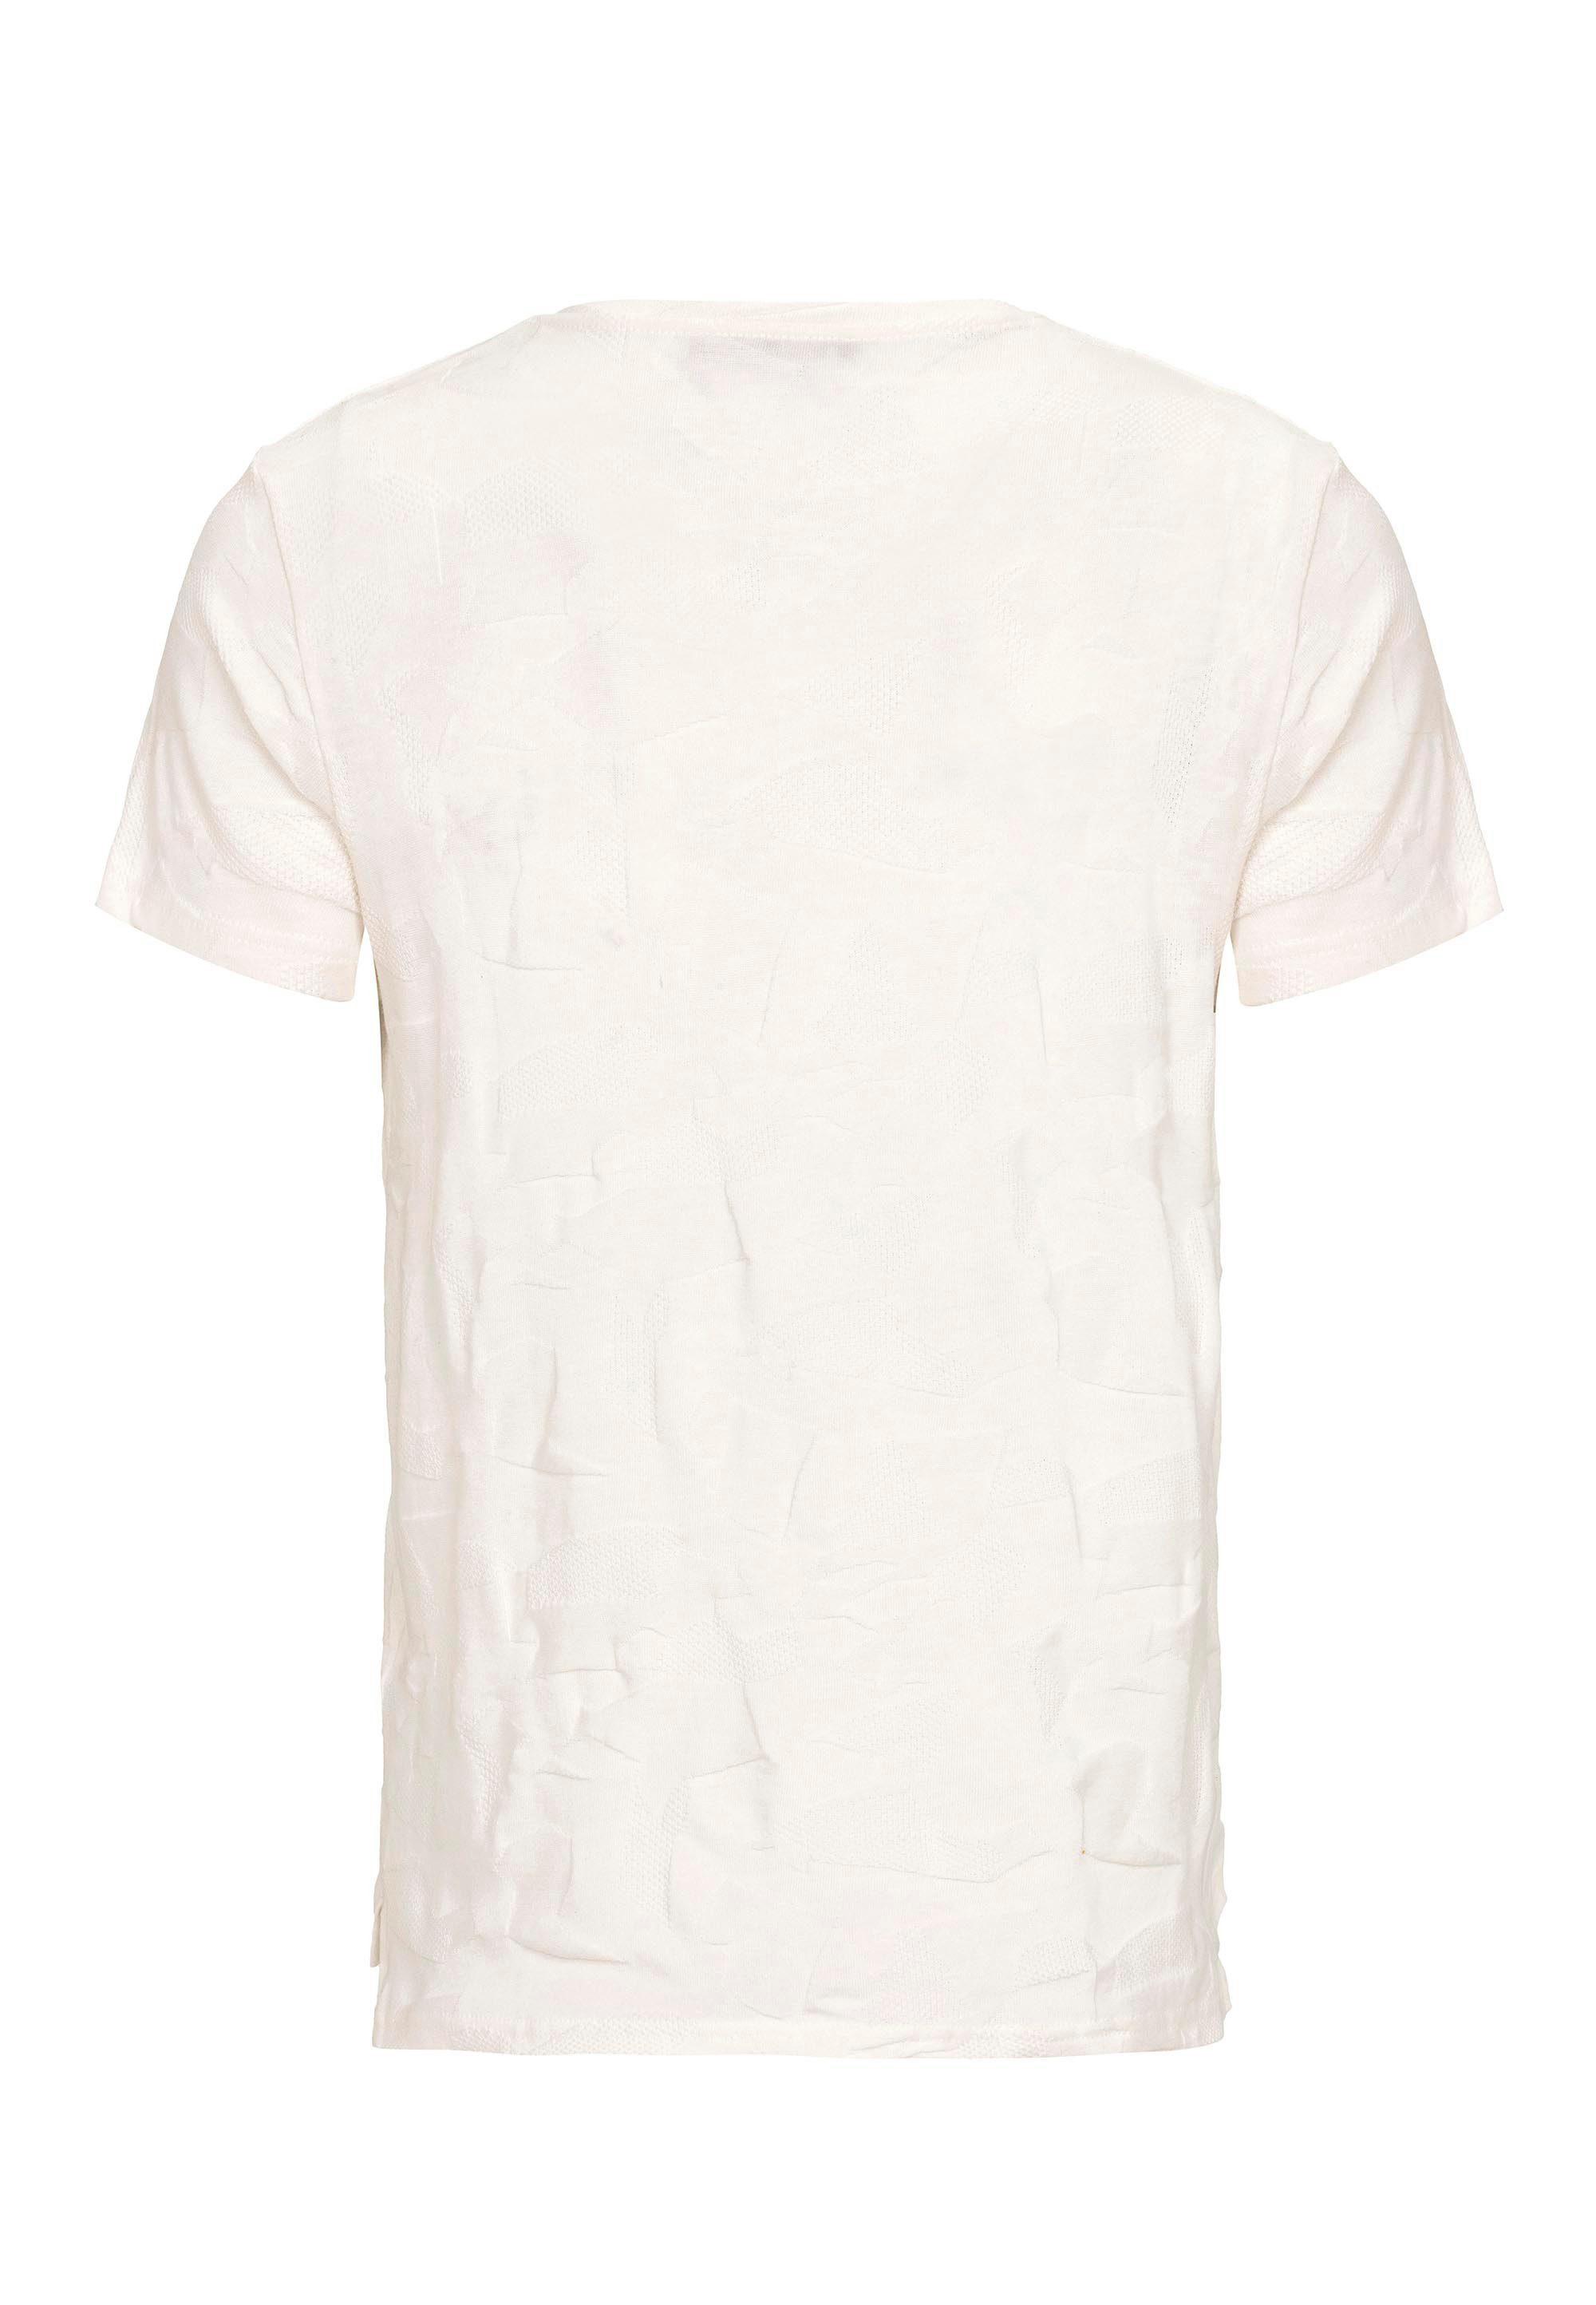 weiß mit Rapids RedBridge innovativem T-Shirt Cedar "Pressed-Pieces"-Design